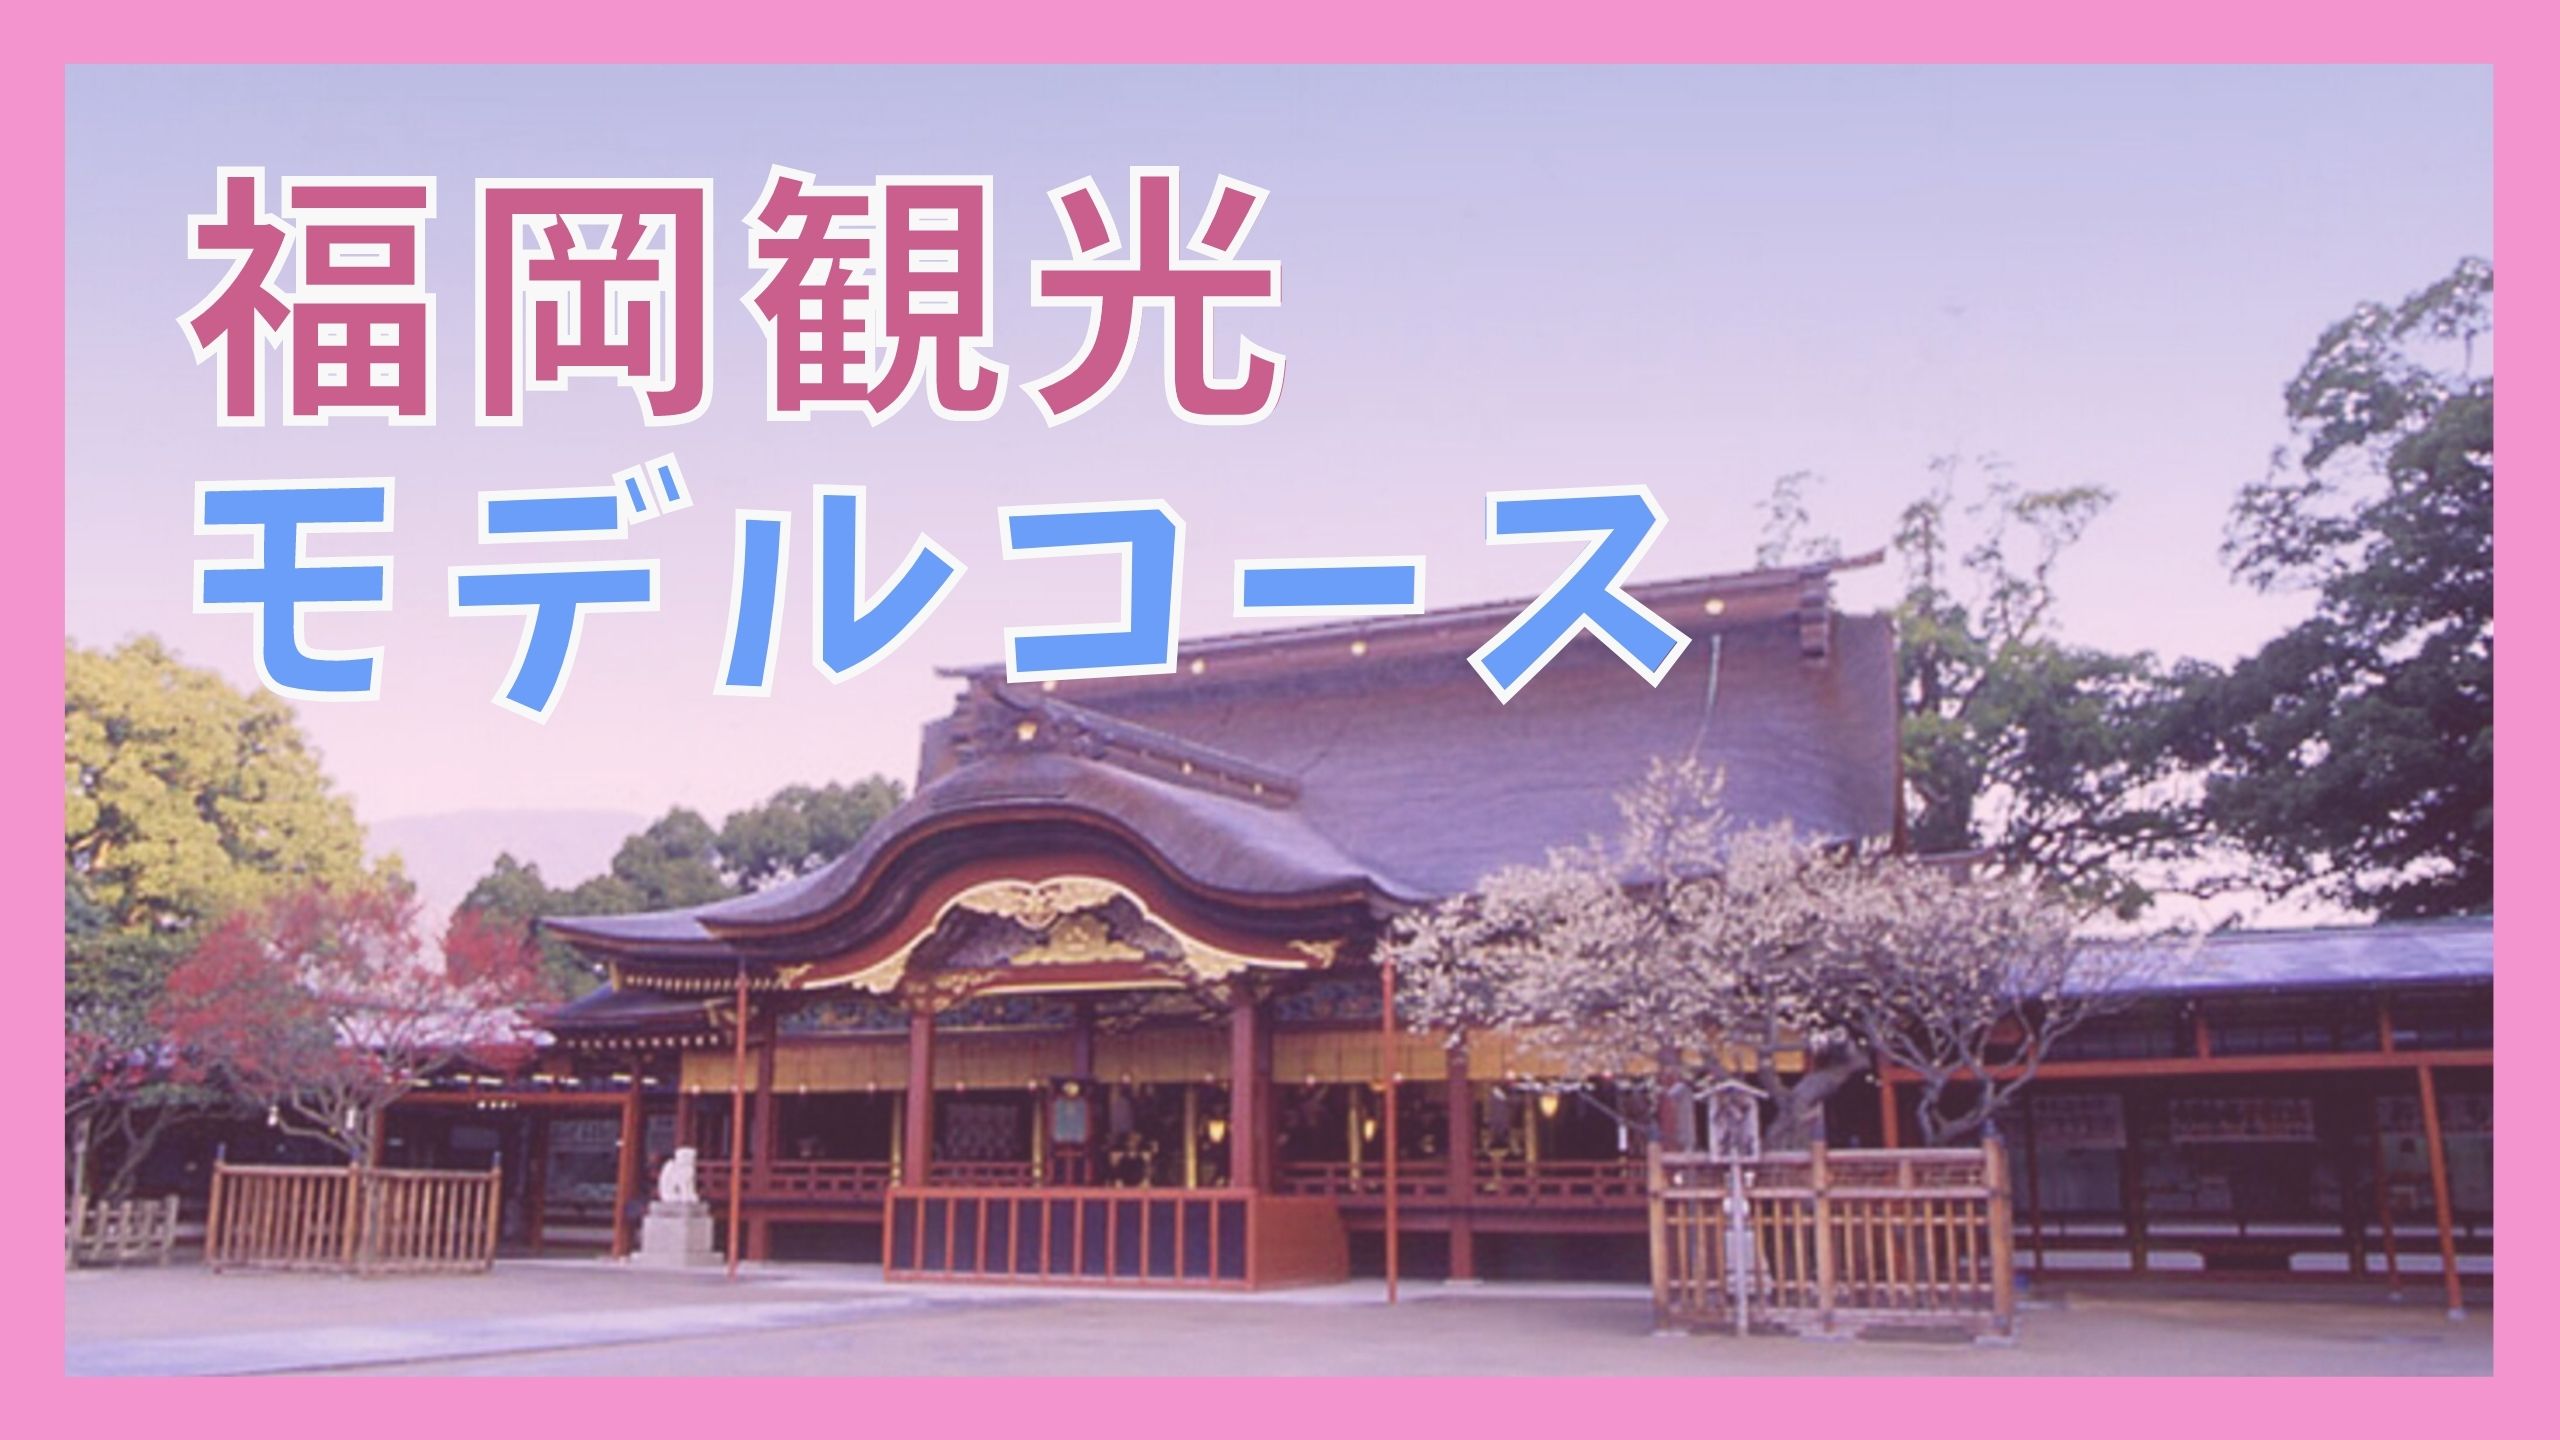 福岡 博多観光モデルコース 1泊2日で巡る11の観光名所 ジャパンワンダラー